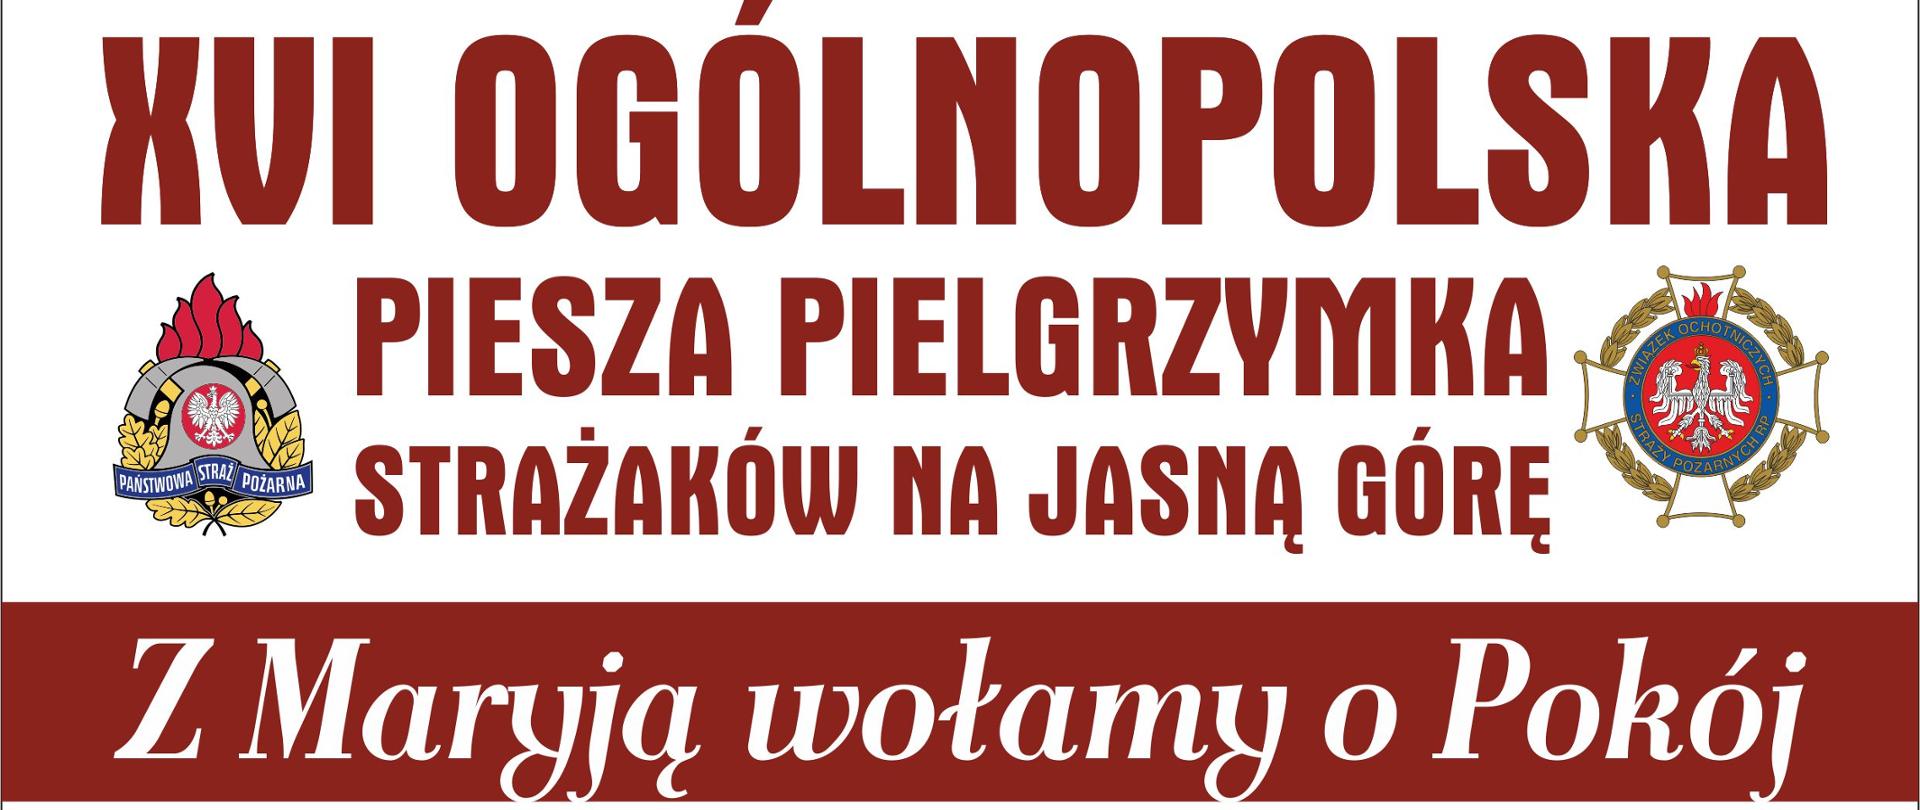 plakat informujący o XVI ogólnopolskiej pieszej pielgrzymce strażaków na Jasną Górę 